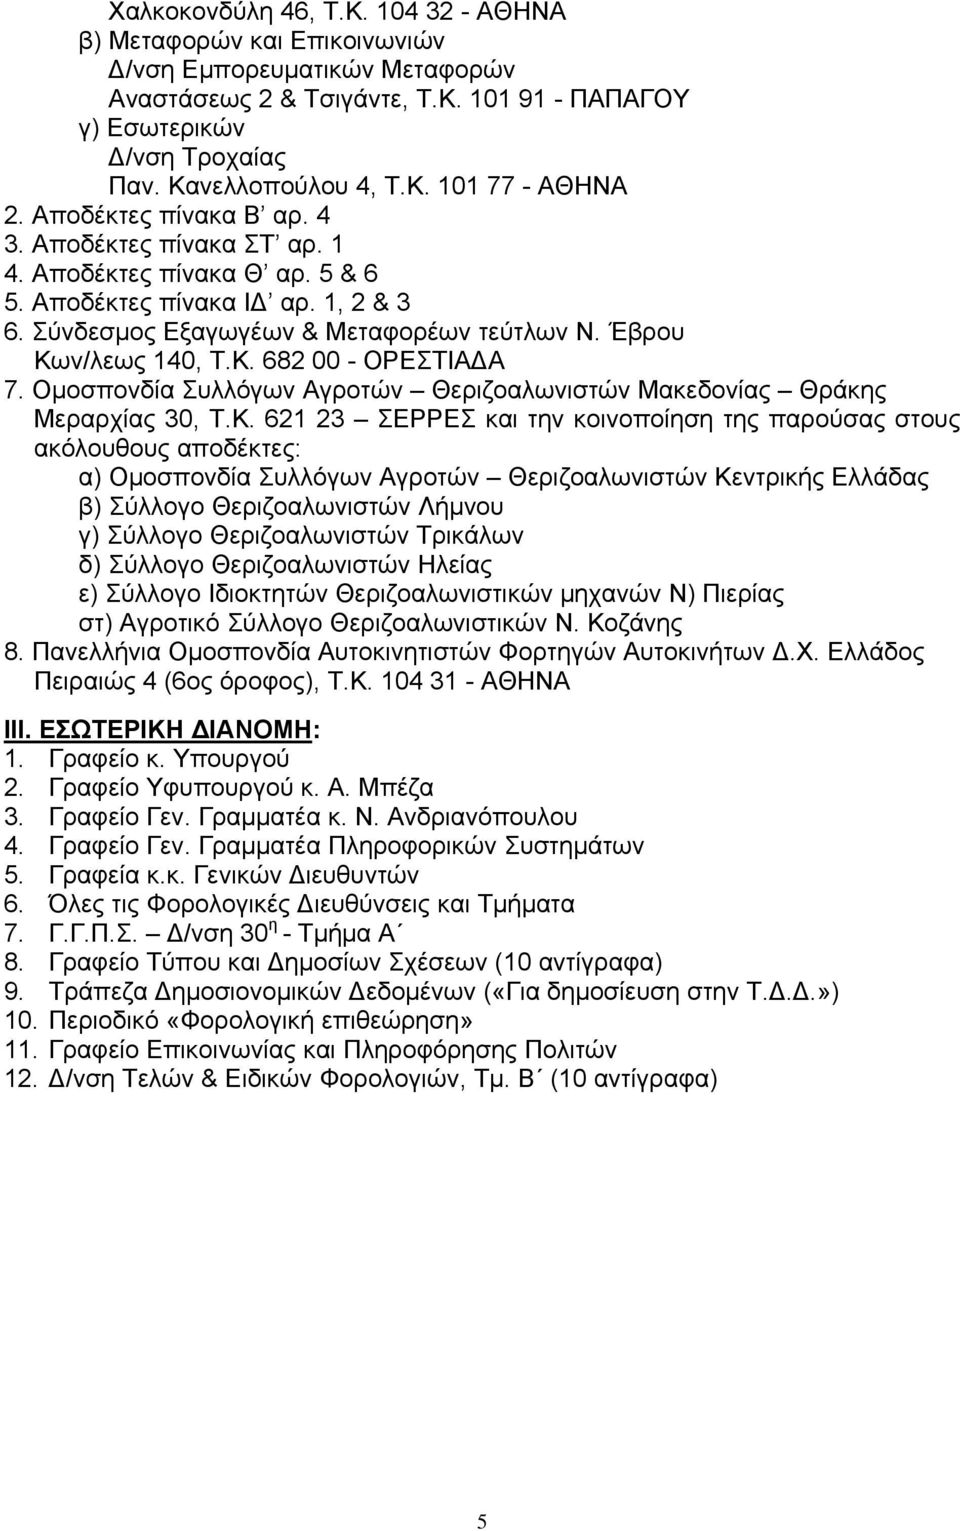 Ομοσπονδία Συλλόγων Αγροτών Θεριζοαλωνιστών Μακεδονίας Θράκης Μεραρχίας 30, Τ.Κ.